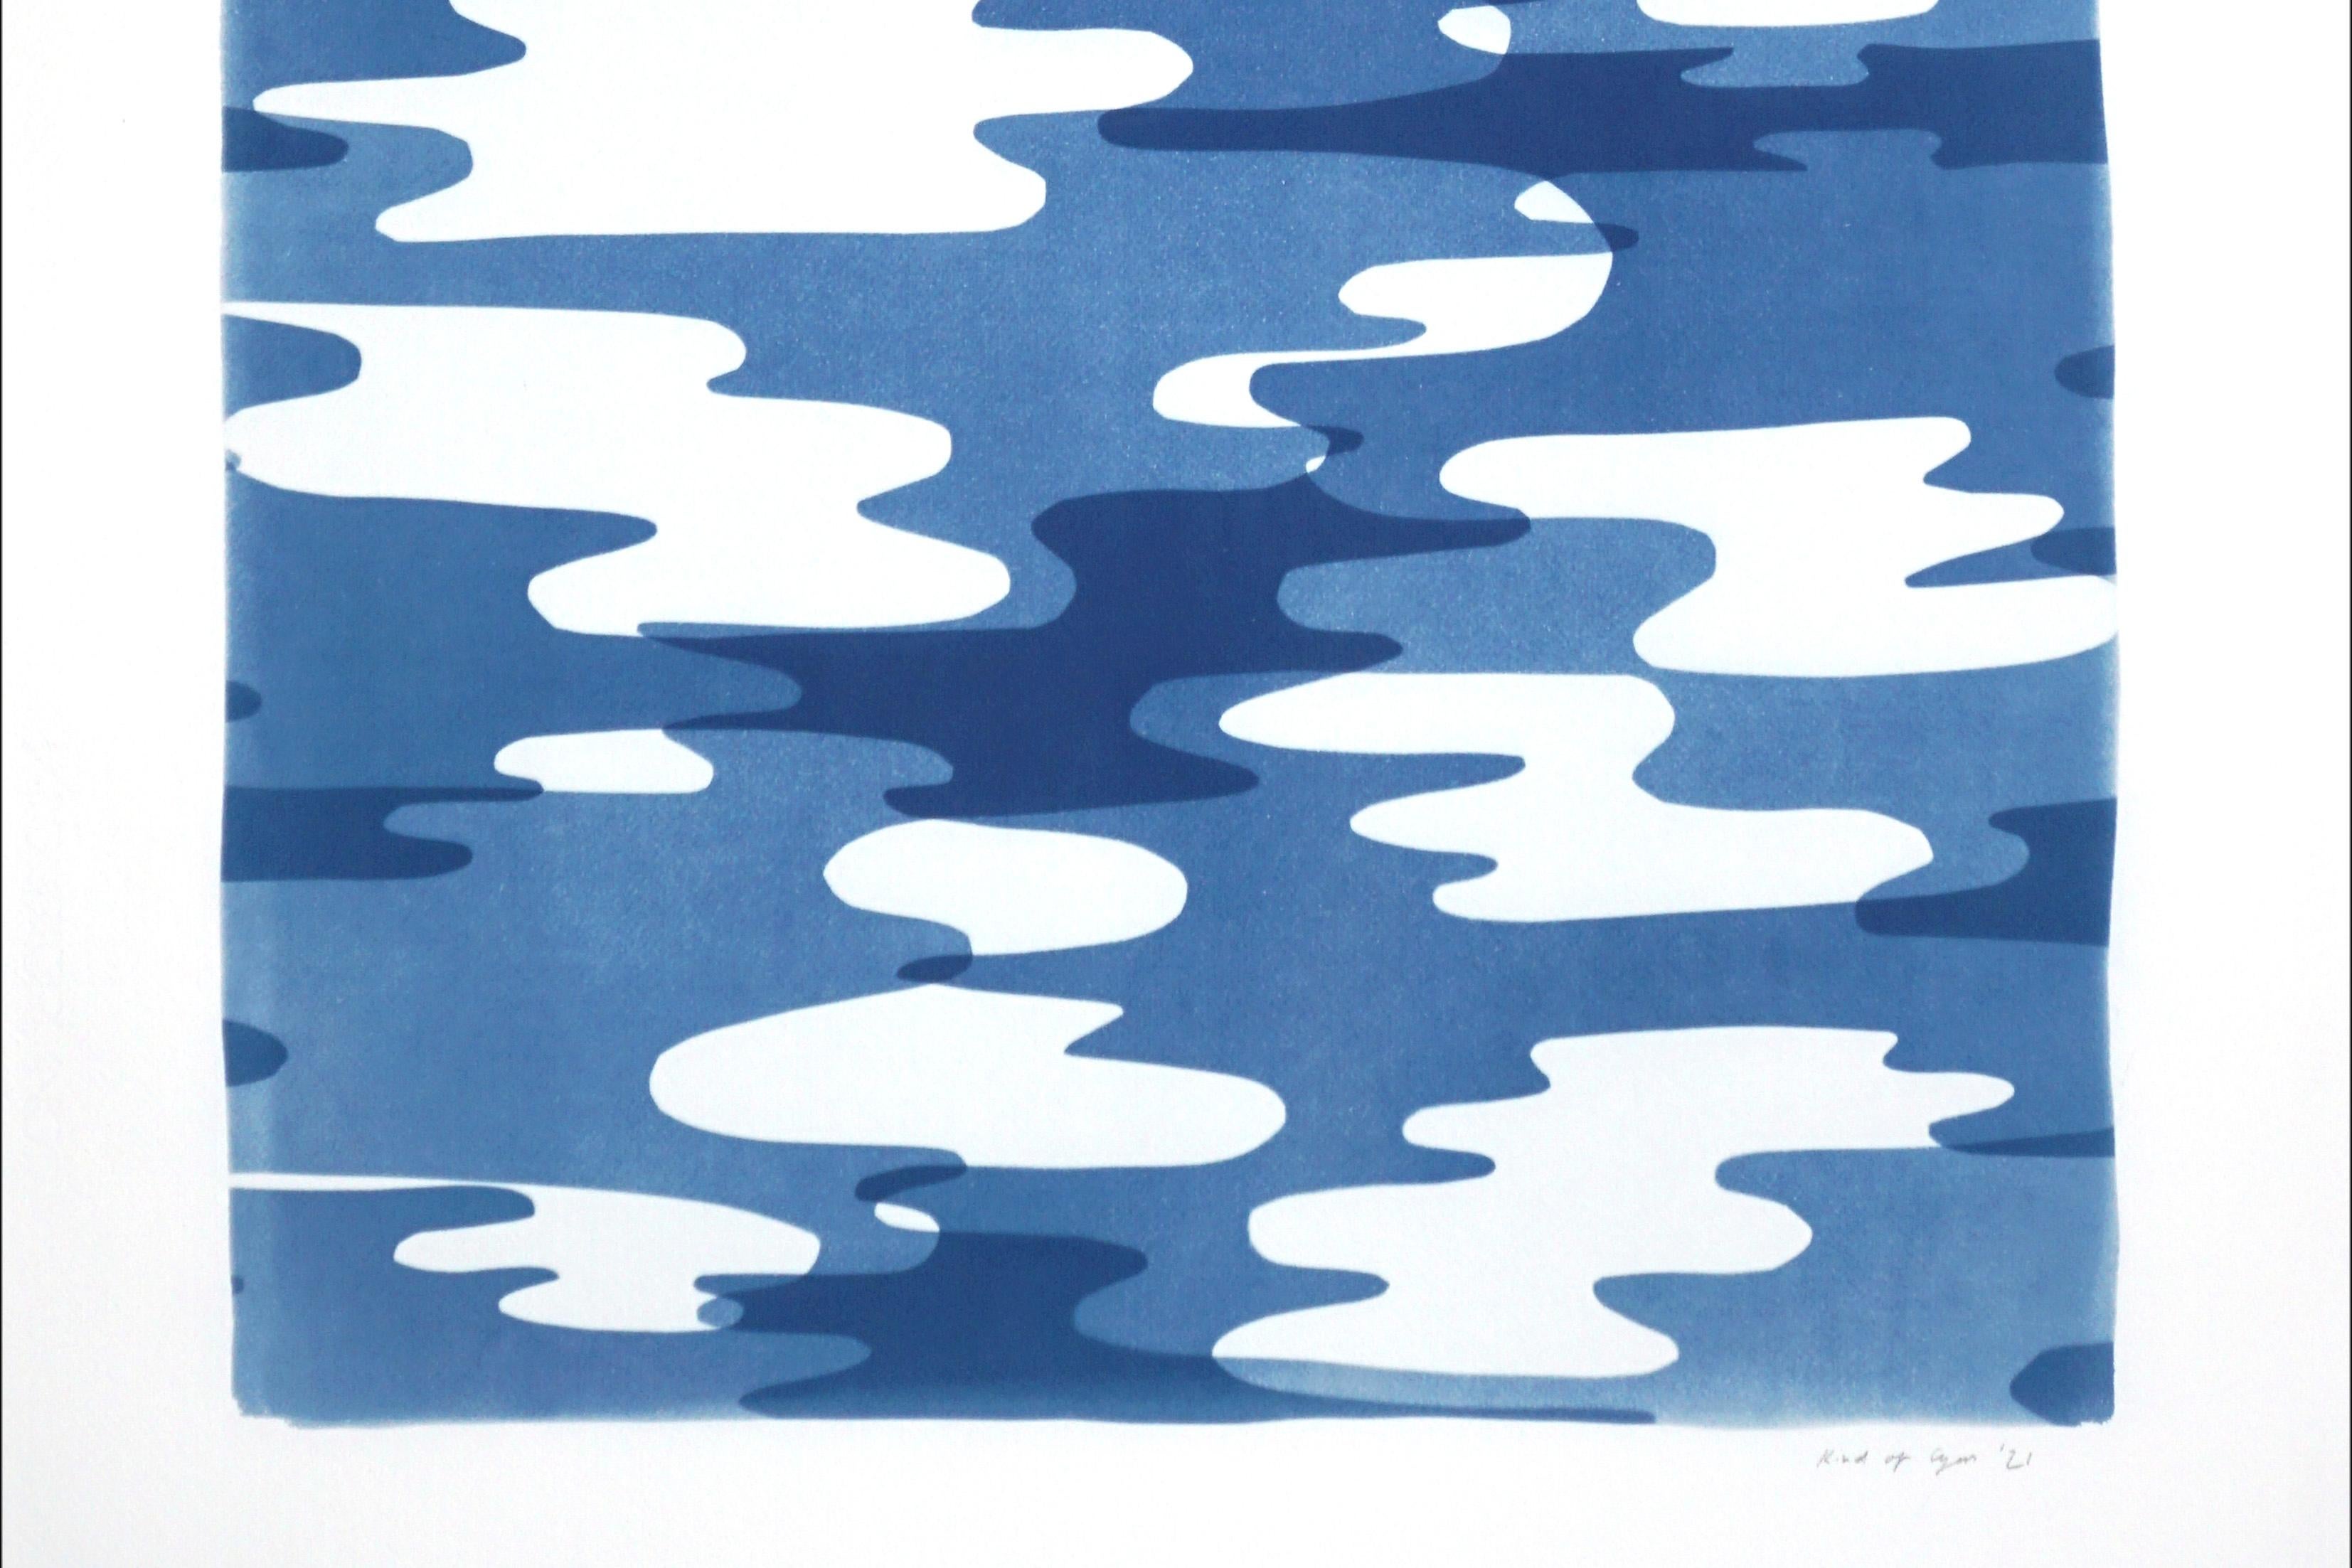 Reflections de camouflage, imprimé monotype de cyanotype, tons bleus de style Memphis, 2021 - Moderne Photograph par Kind of Cyan